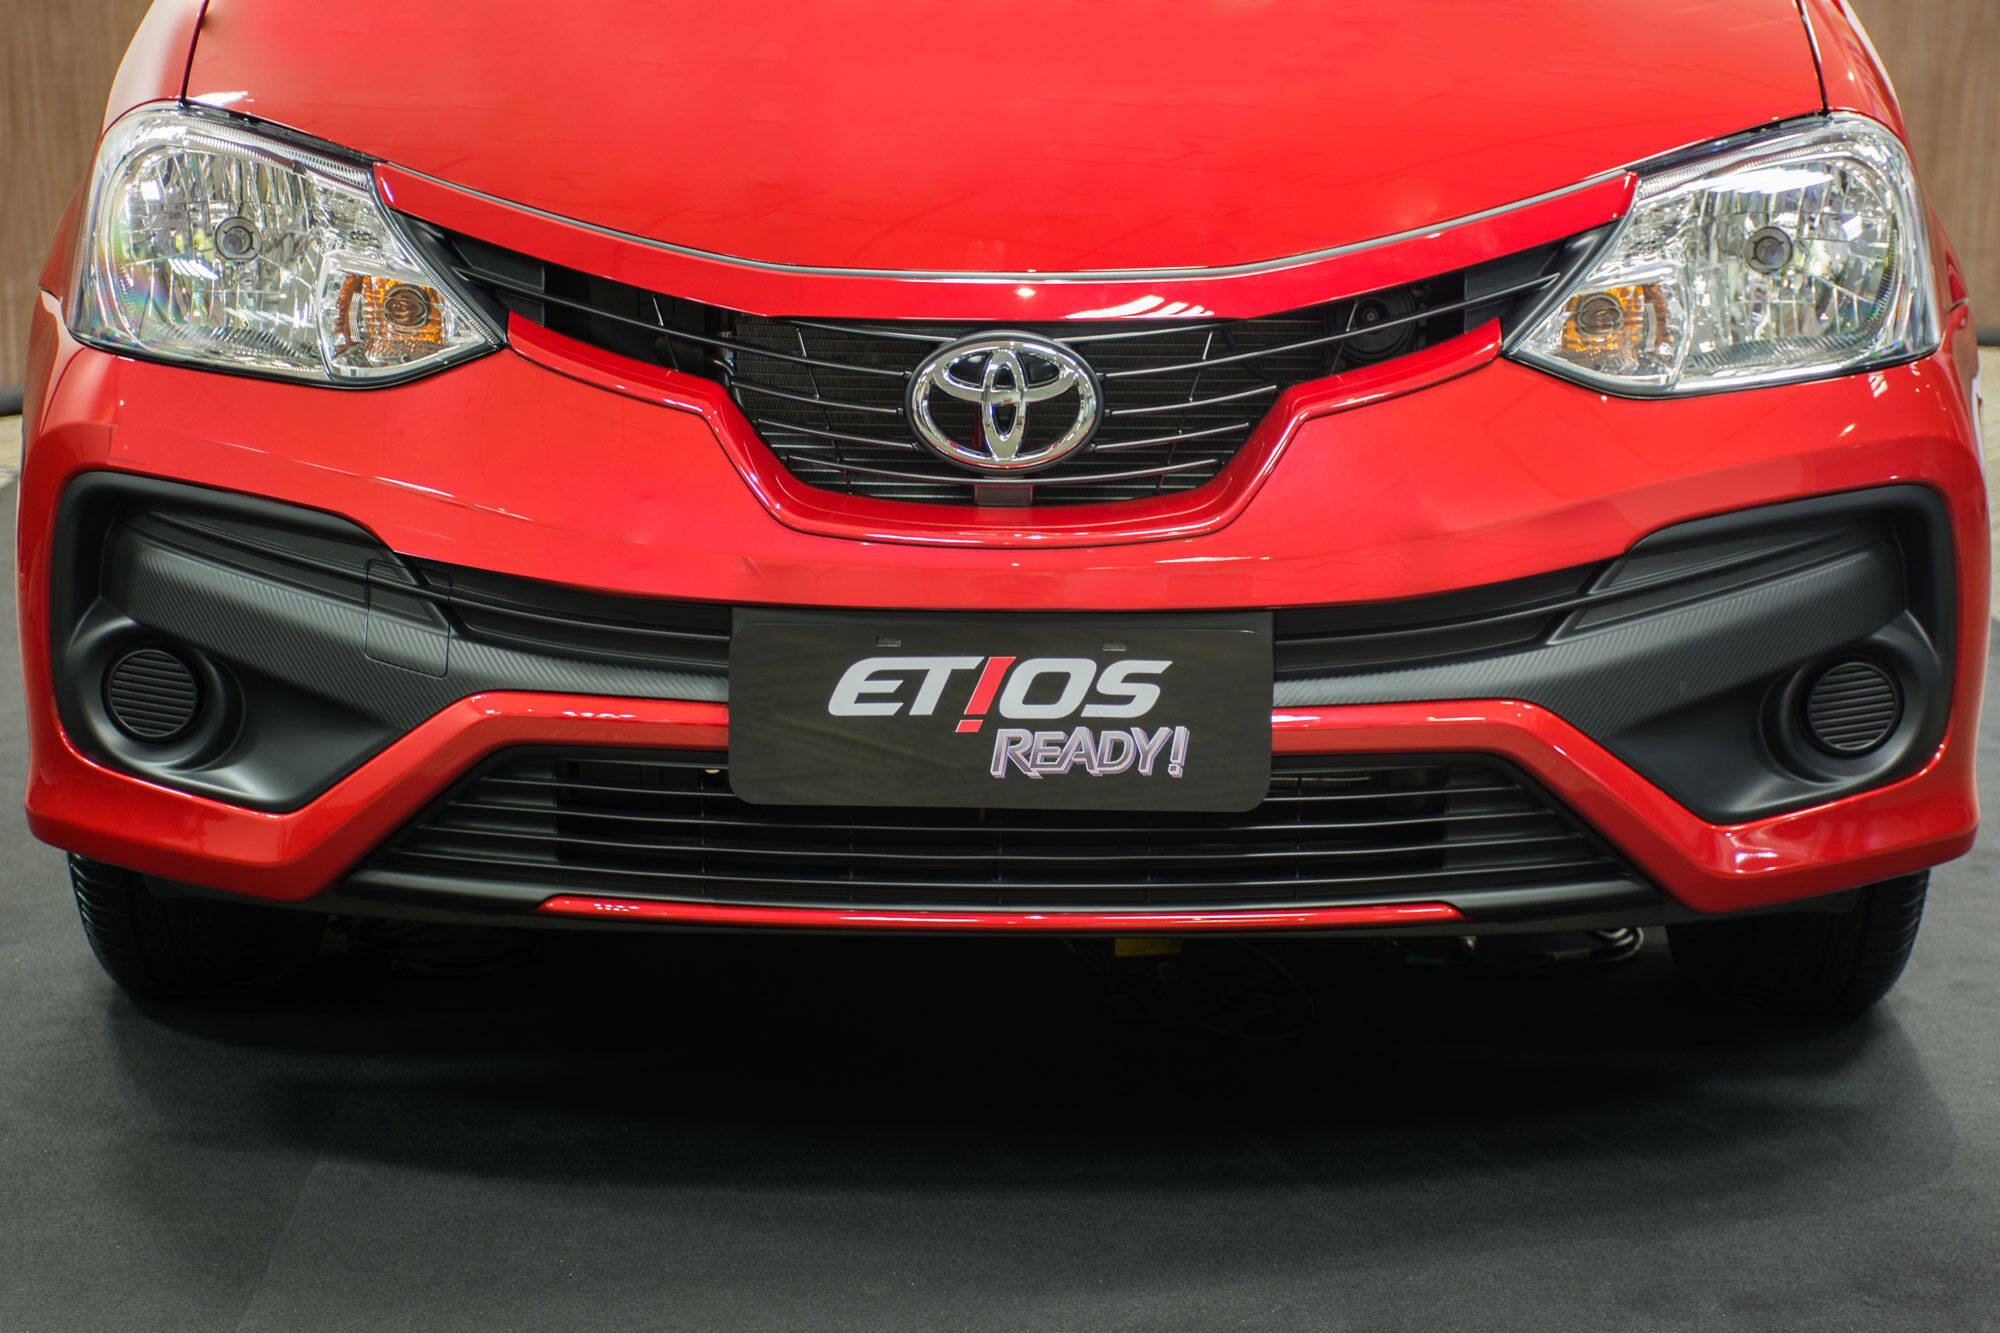 Toyota Etios Ready. Foto: Divulgação/Toyota